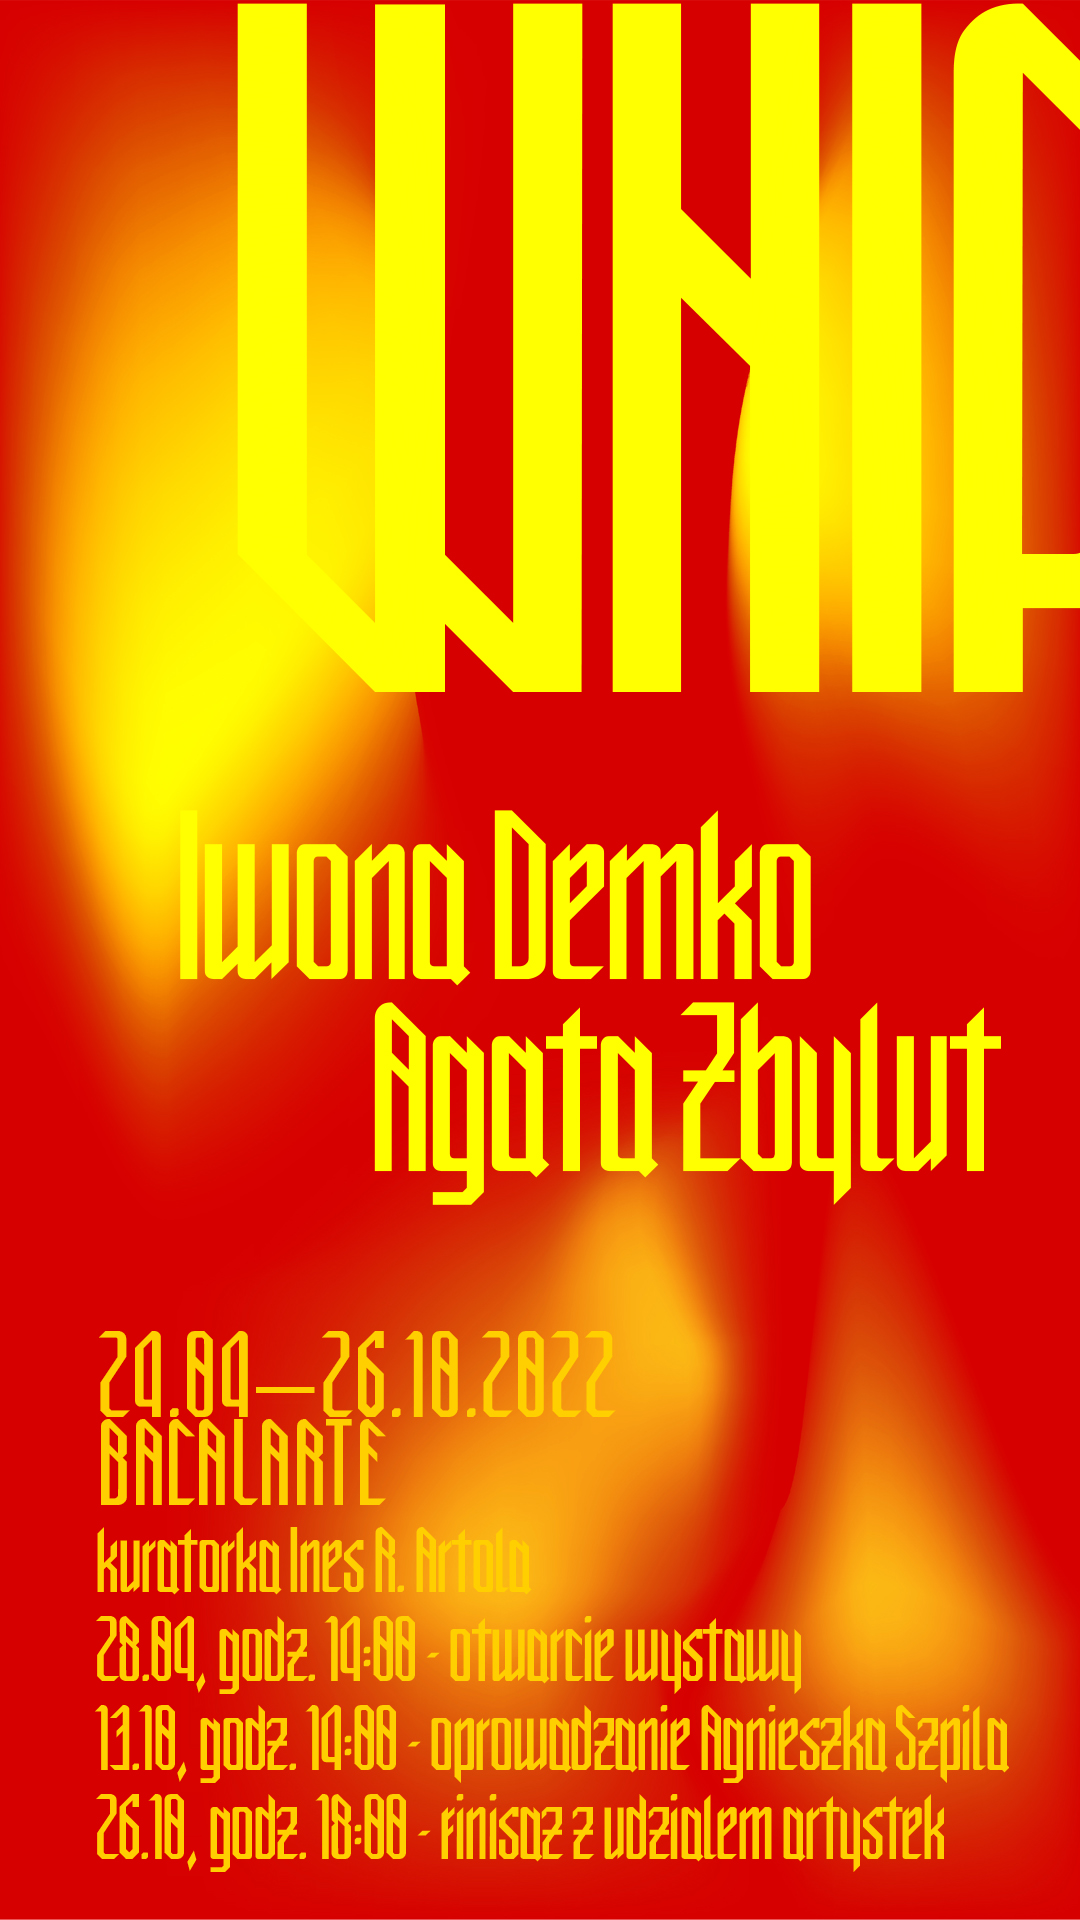 Plakat dotyczący wystawy Iwony Demko i Agaty Zbylut.